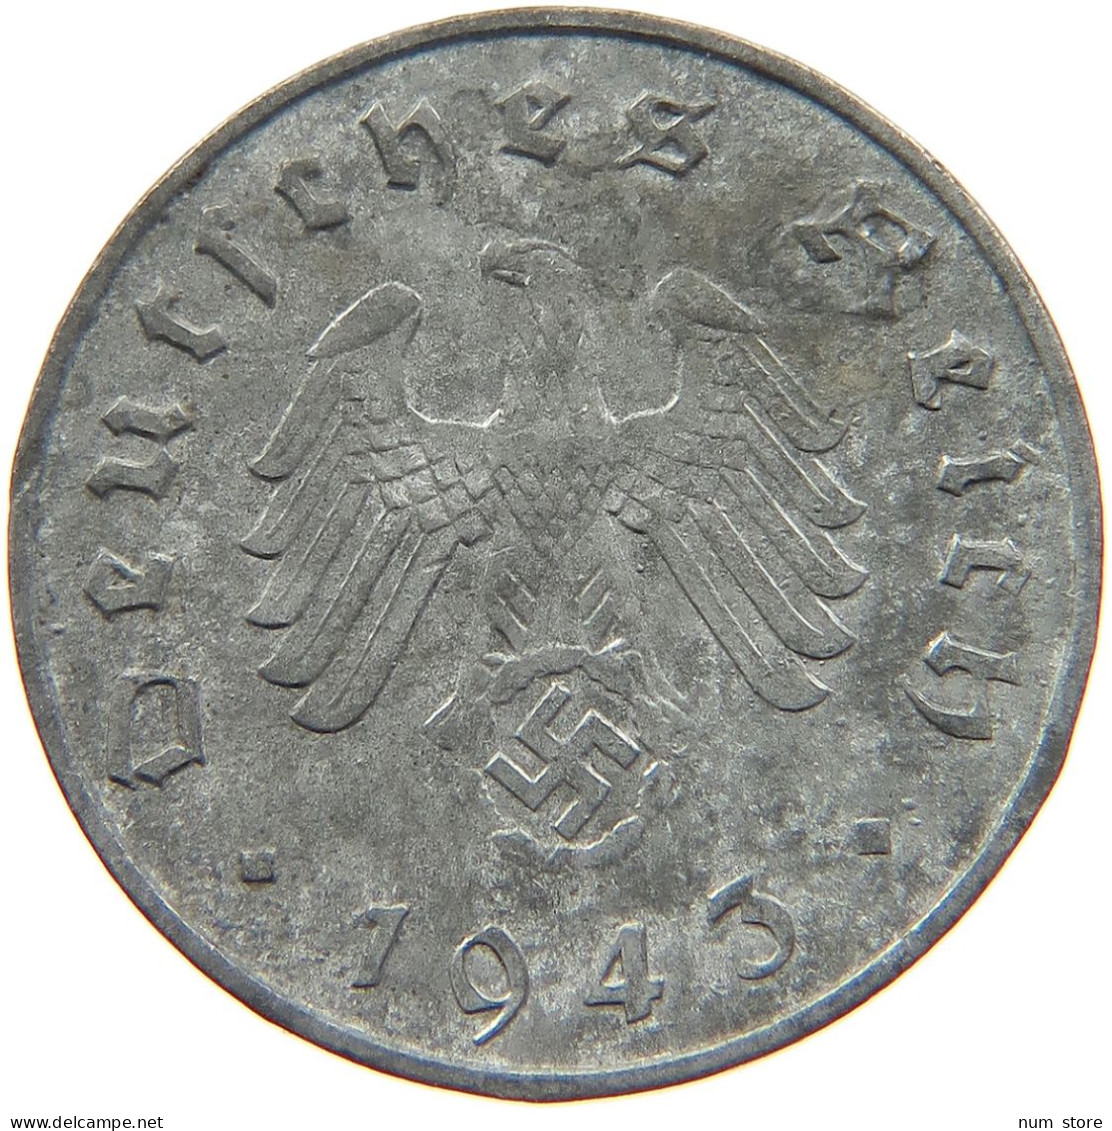 GERMANY 10 REICHSPFENNIG 1943 A #s095 0051 - 10 Reichspfennig